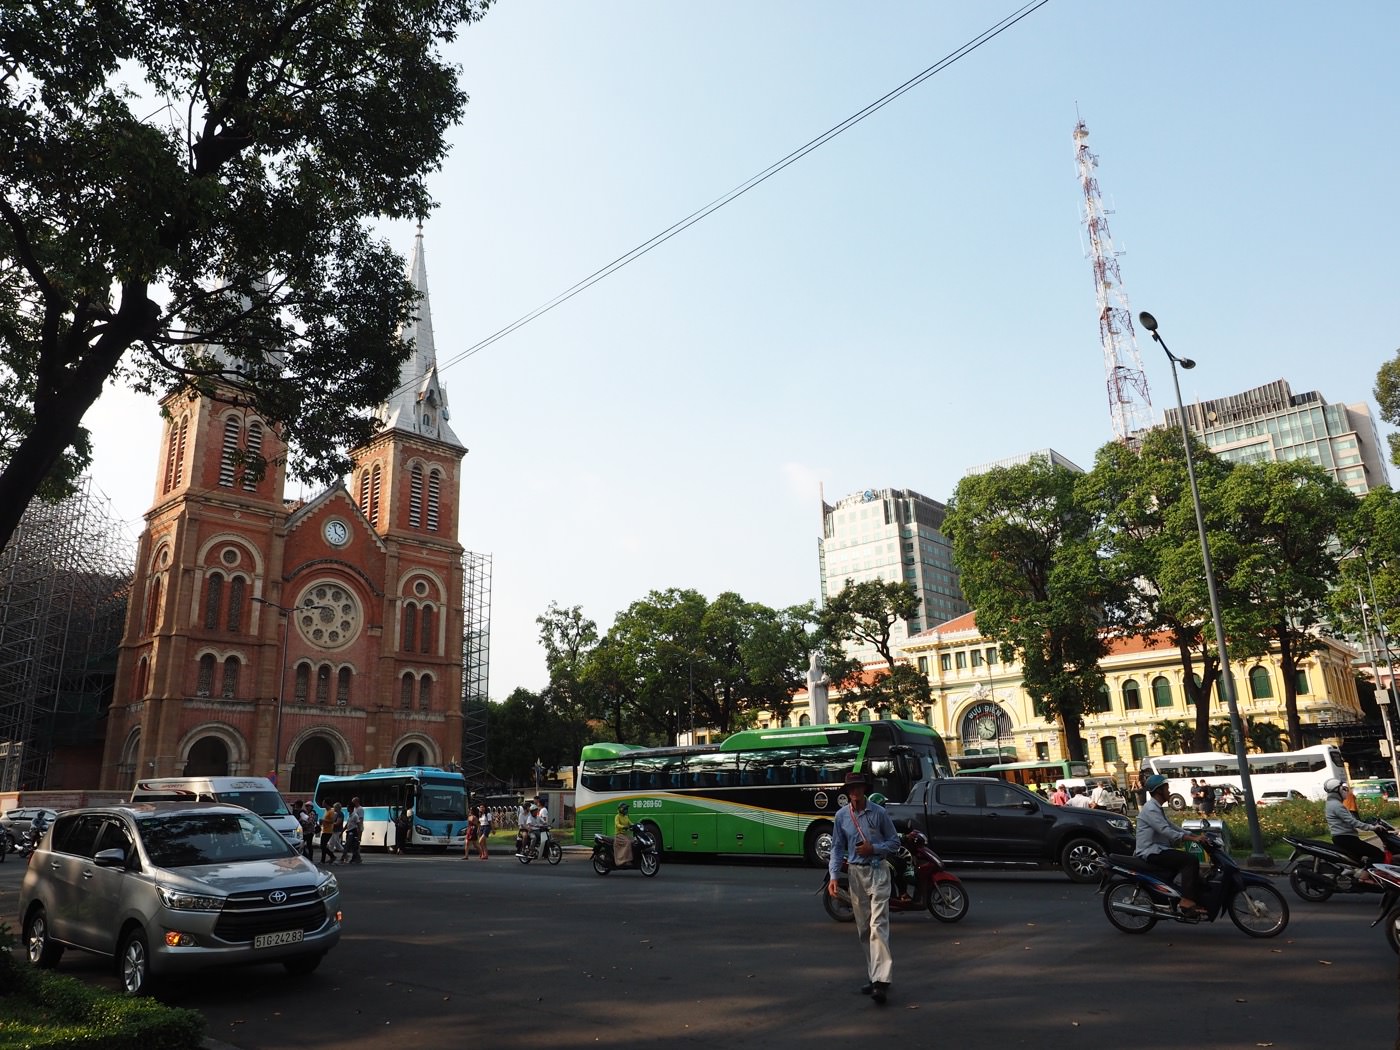 胡志明市景點 悠閒書街、西貢聖母院紅教堂、中央郵政總局的日與夜 - 一口冒險 Bitesized Adventure